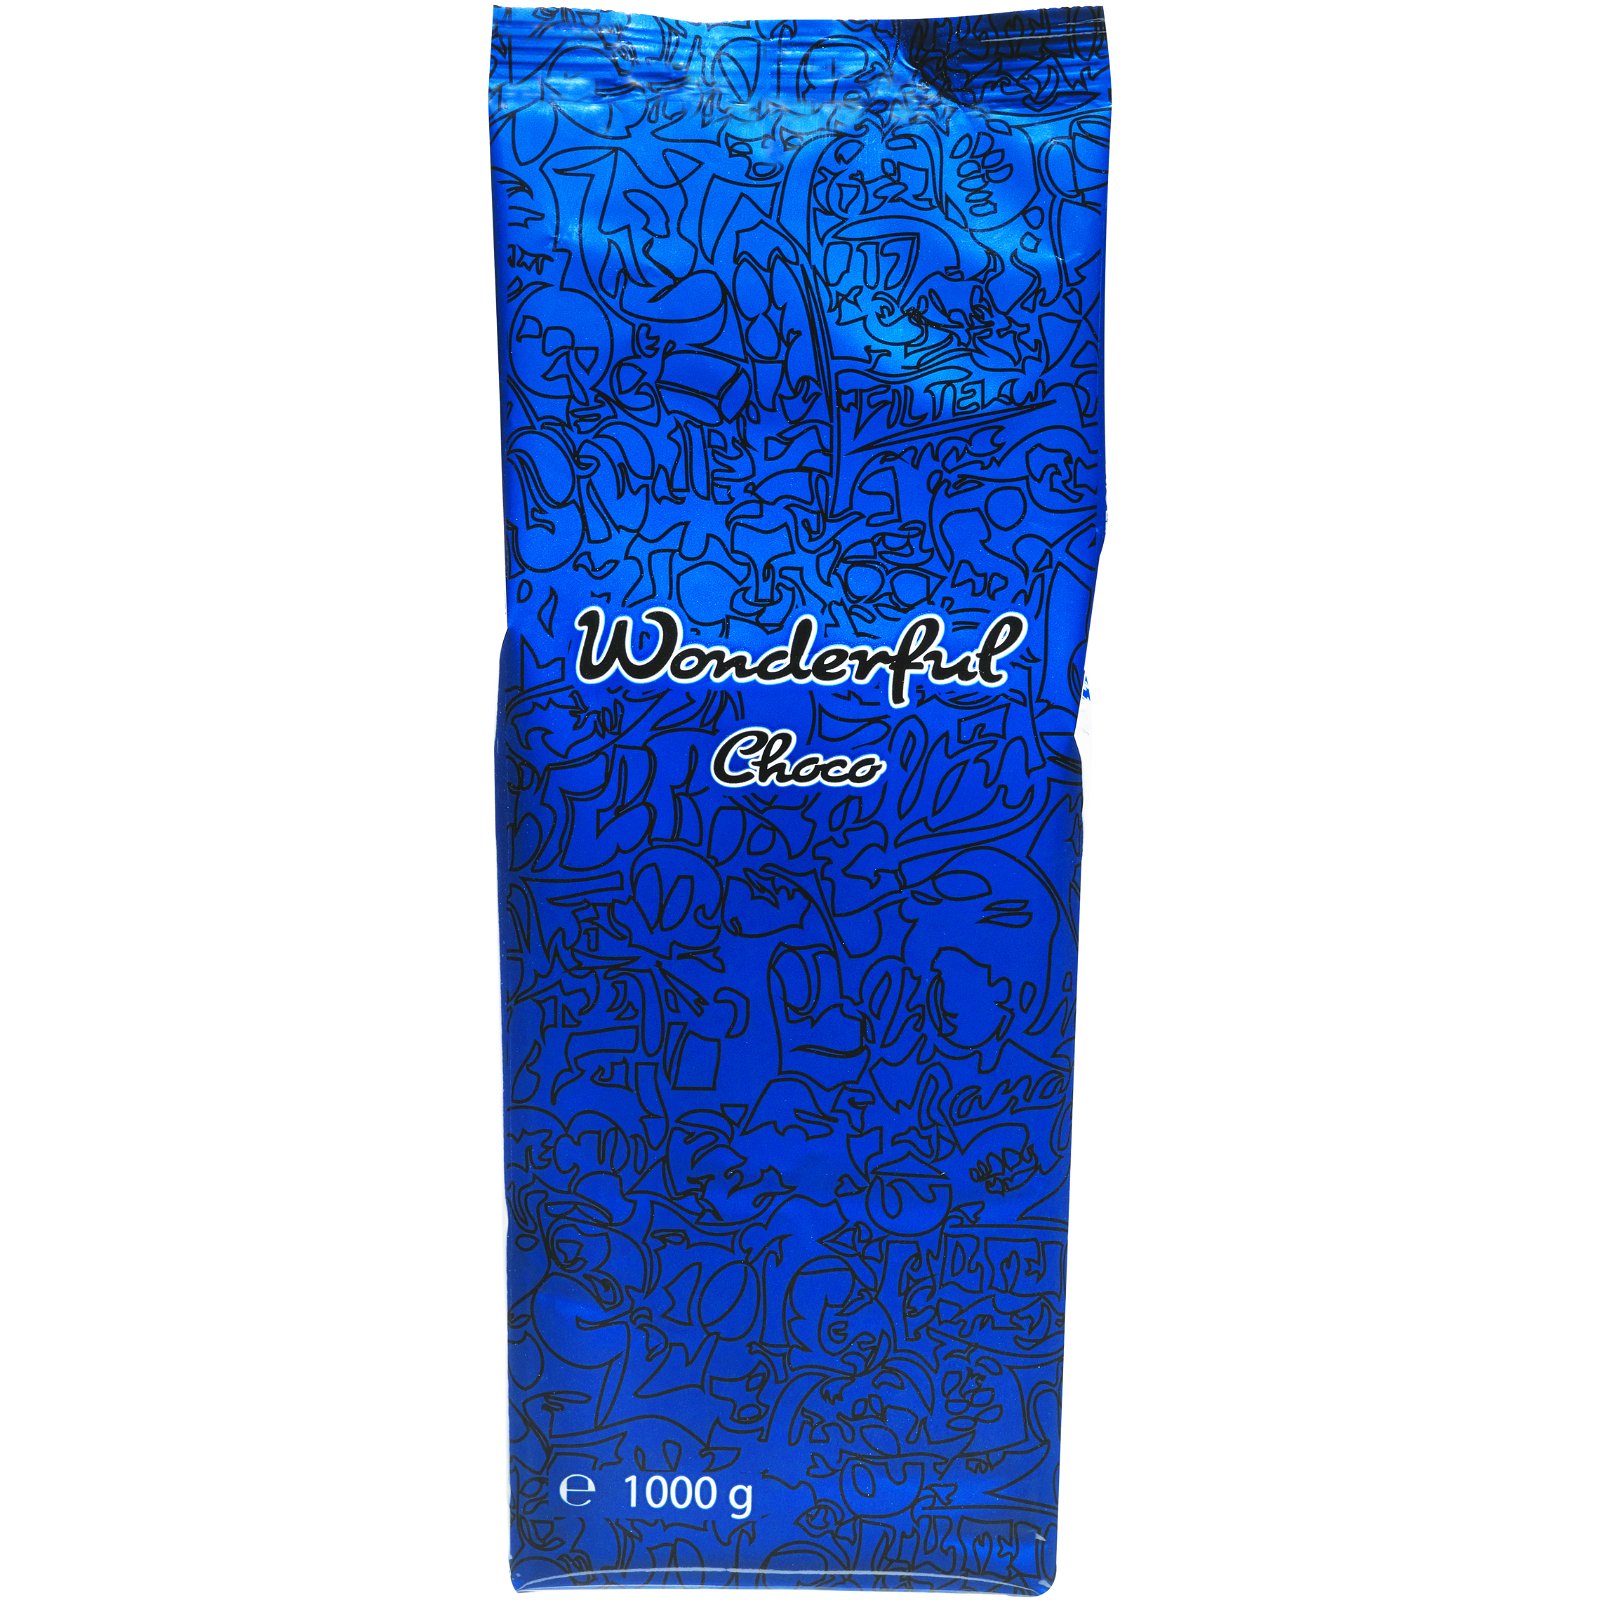 Wonderful Choco Blue kakaopulver